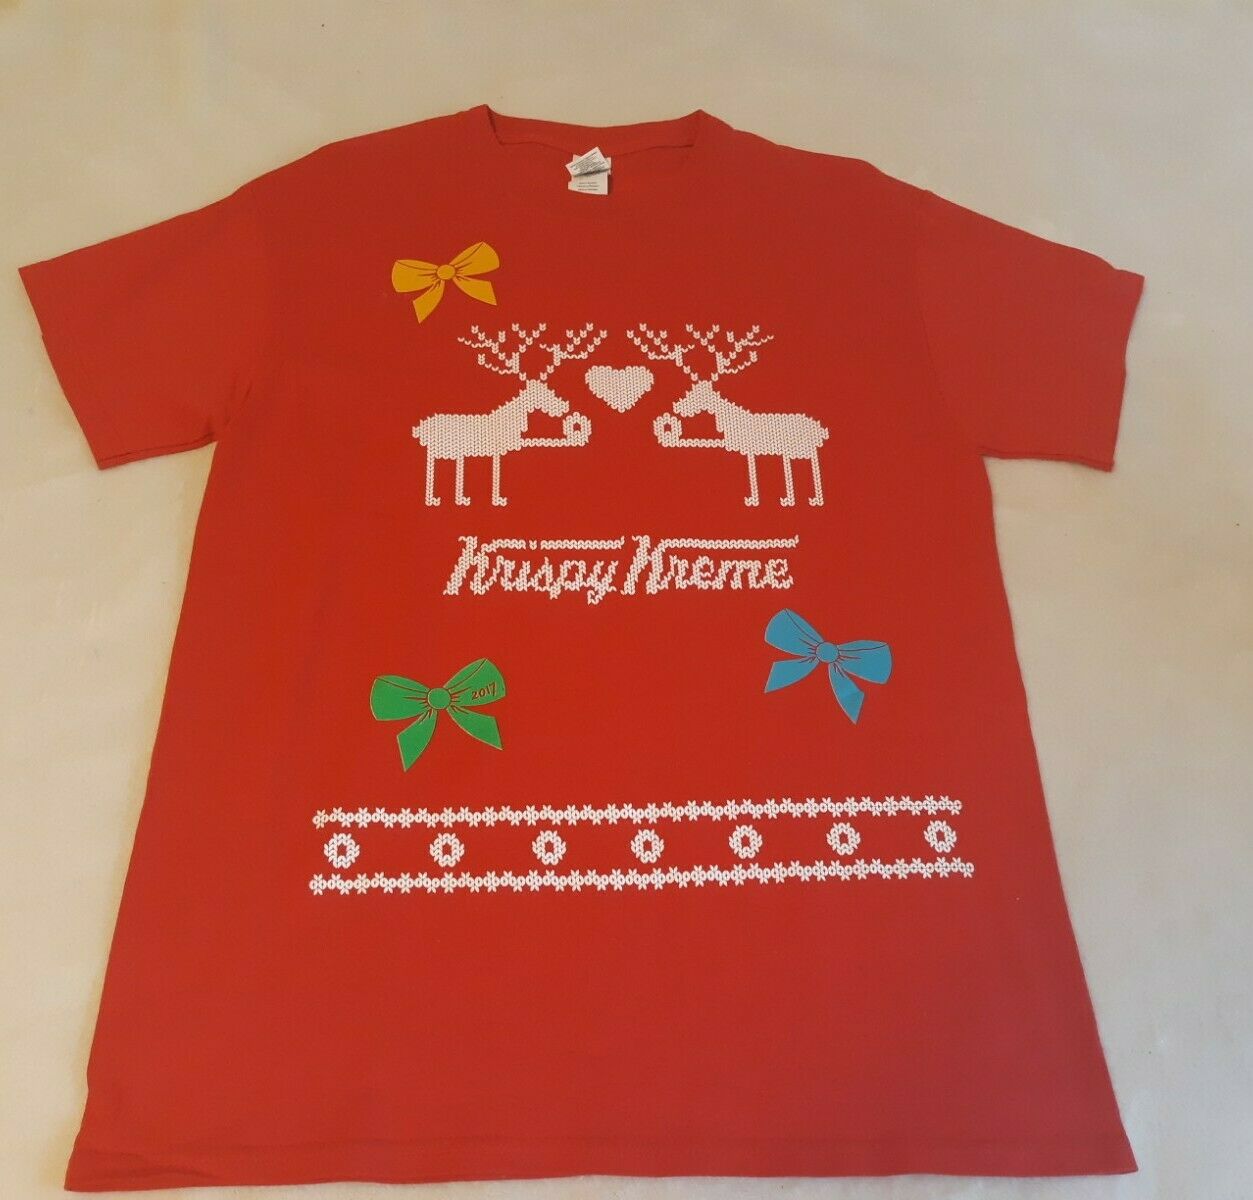 Krispy Kreme  T-shirt - Medium - Red - 2017 Christmas T-shirt